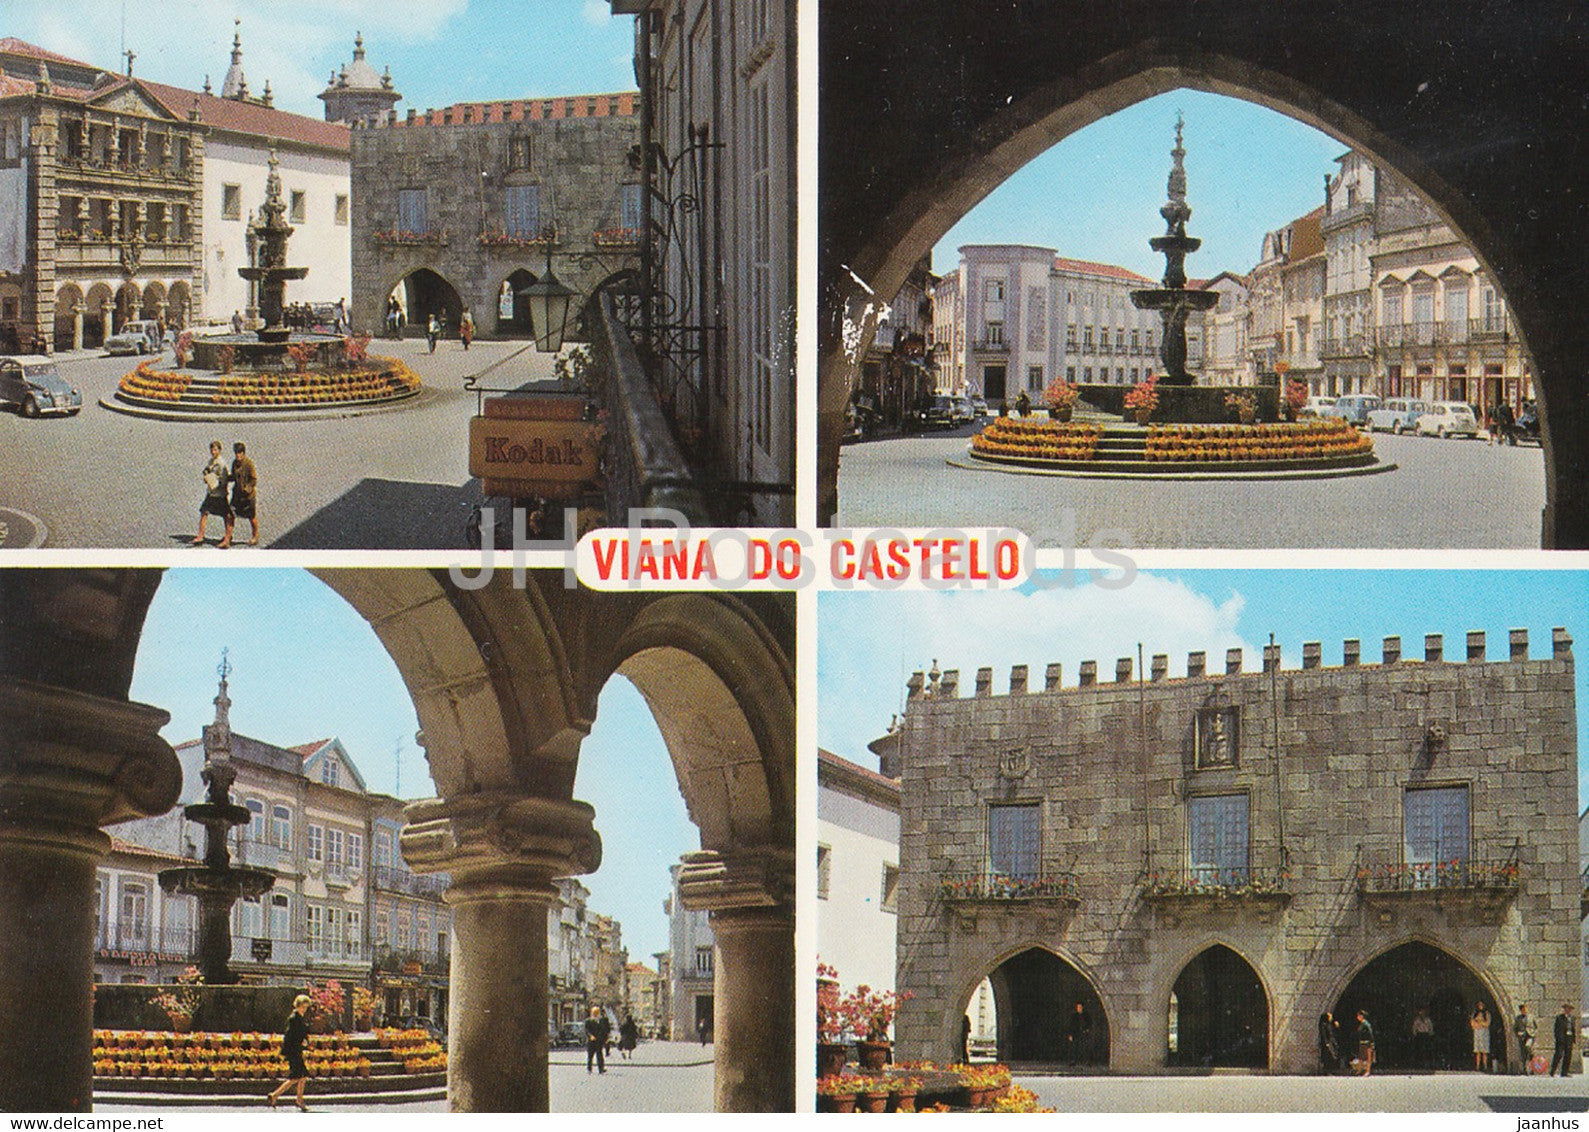 Viana do Castelo - Alguns aspectos da Praca da Republica - 235 - Portugal - unused - JH Postcards